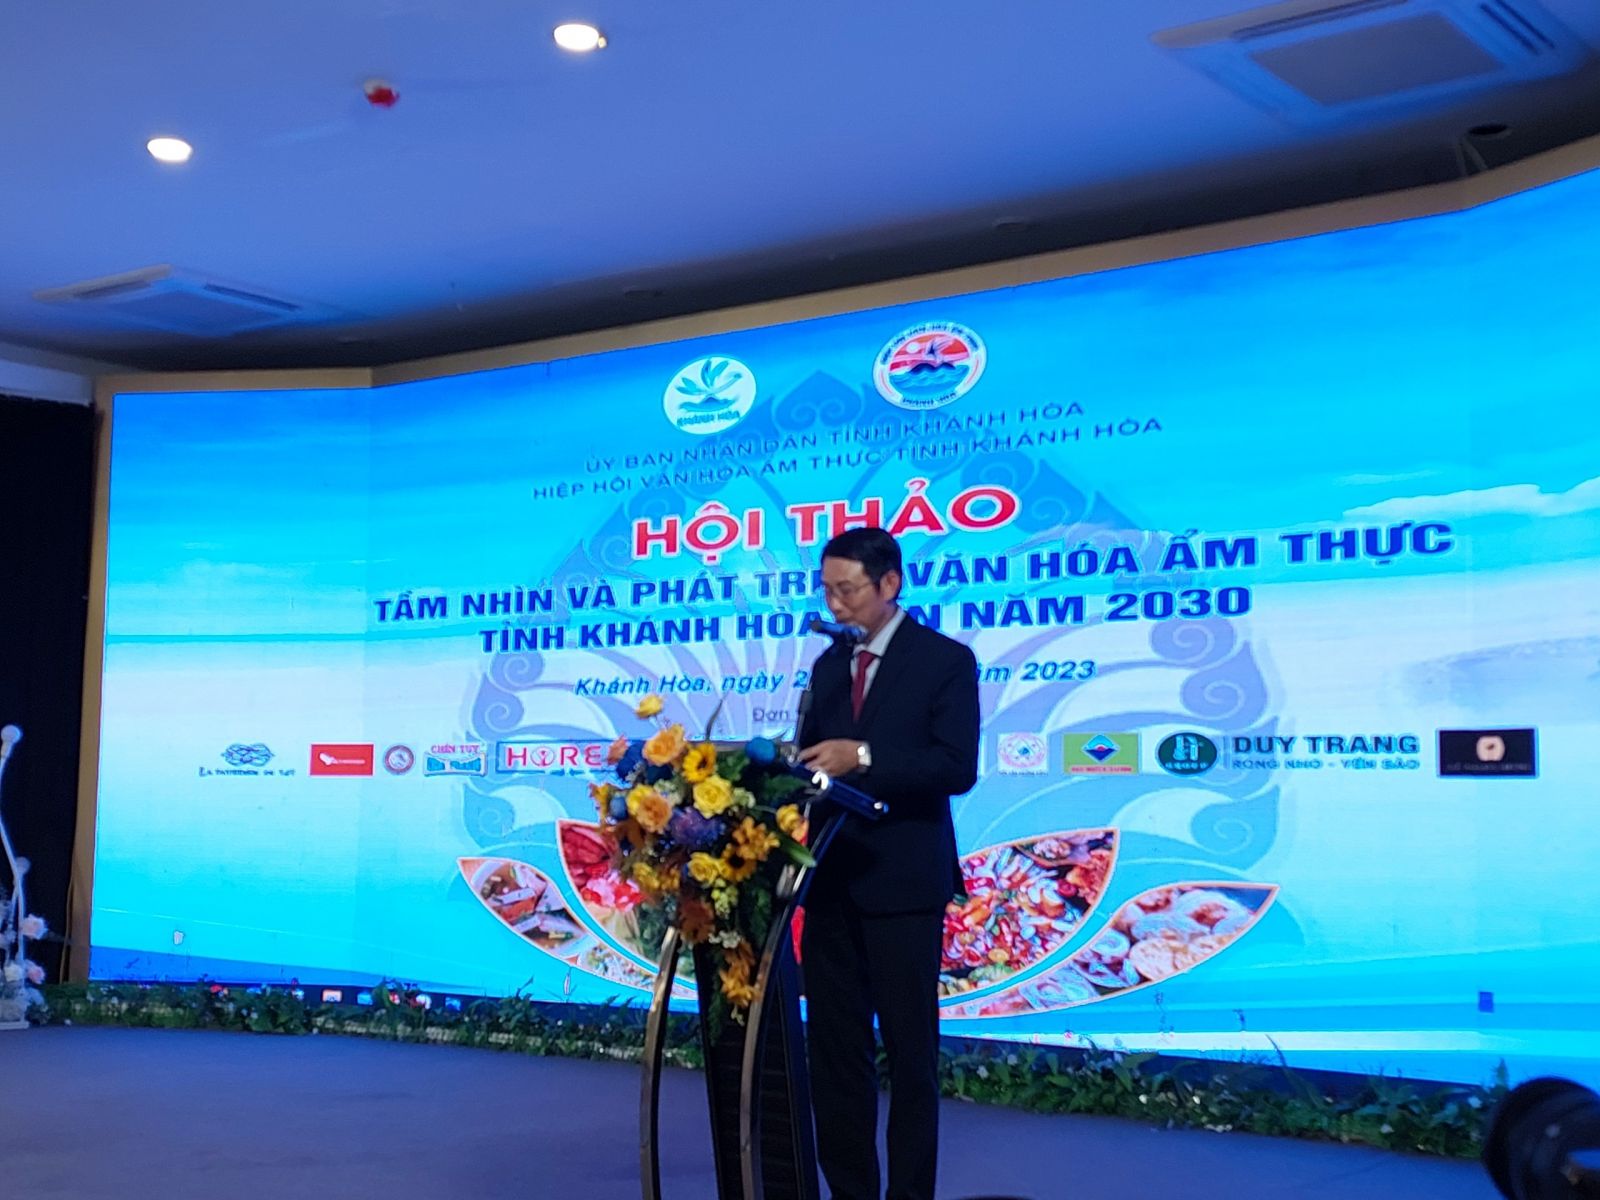 L' Association de la culture gastronomique du Vietnam a décerné le certificat honorant 03 plats de Khanh Hoa dans la recherche de la valeur culturelle culinaire vietnamienne typique.